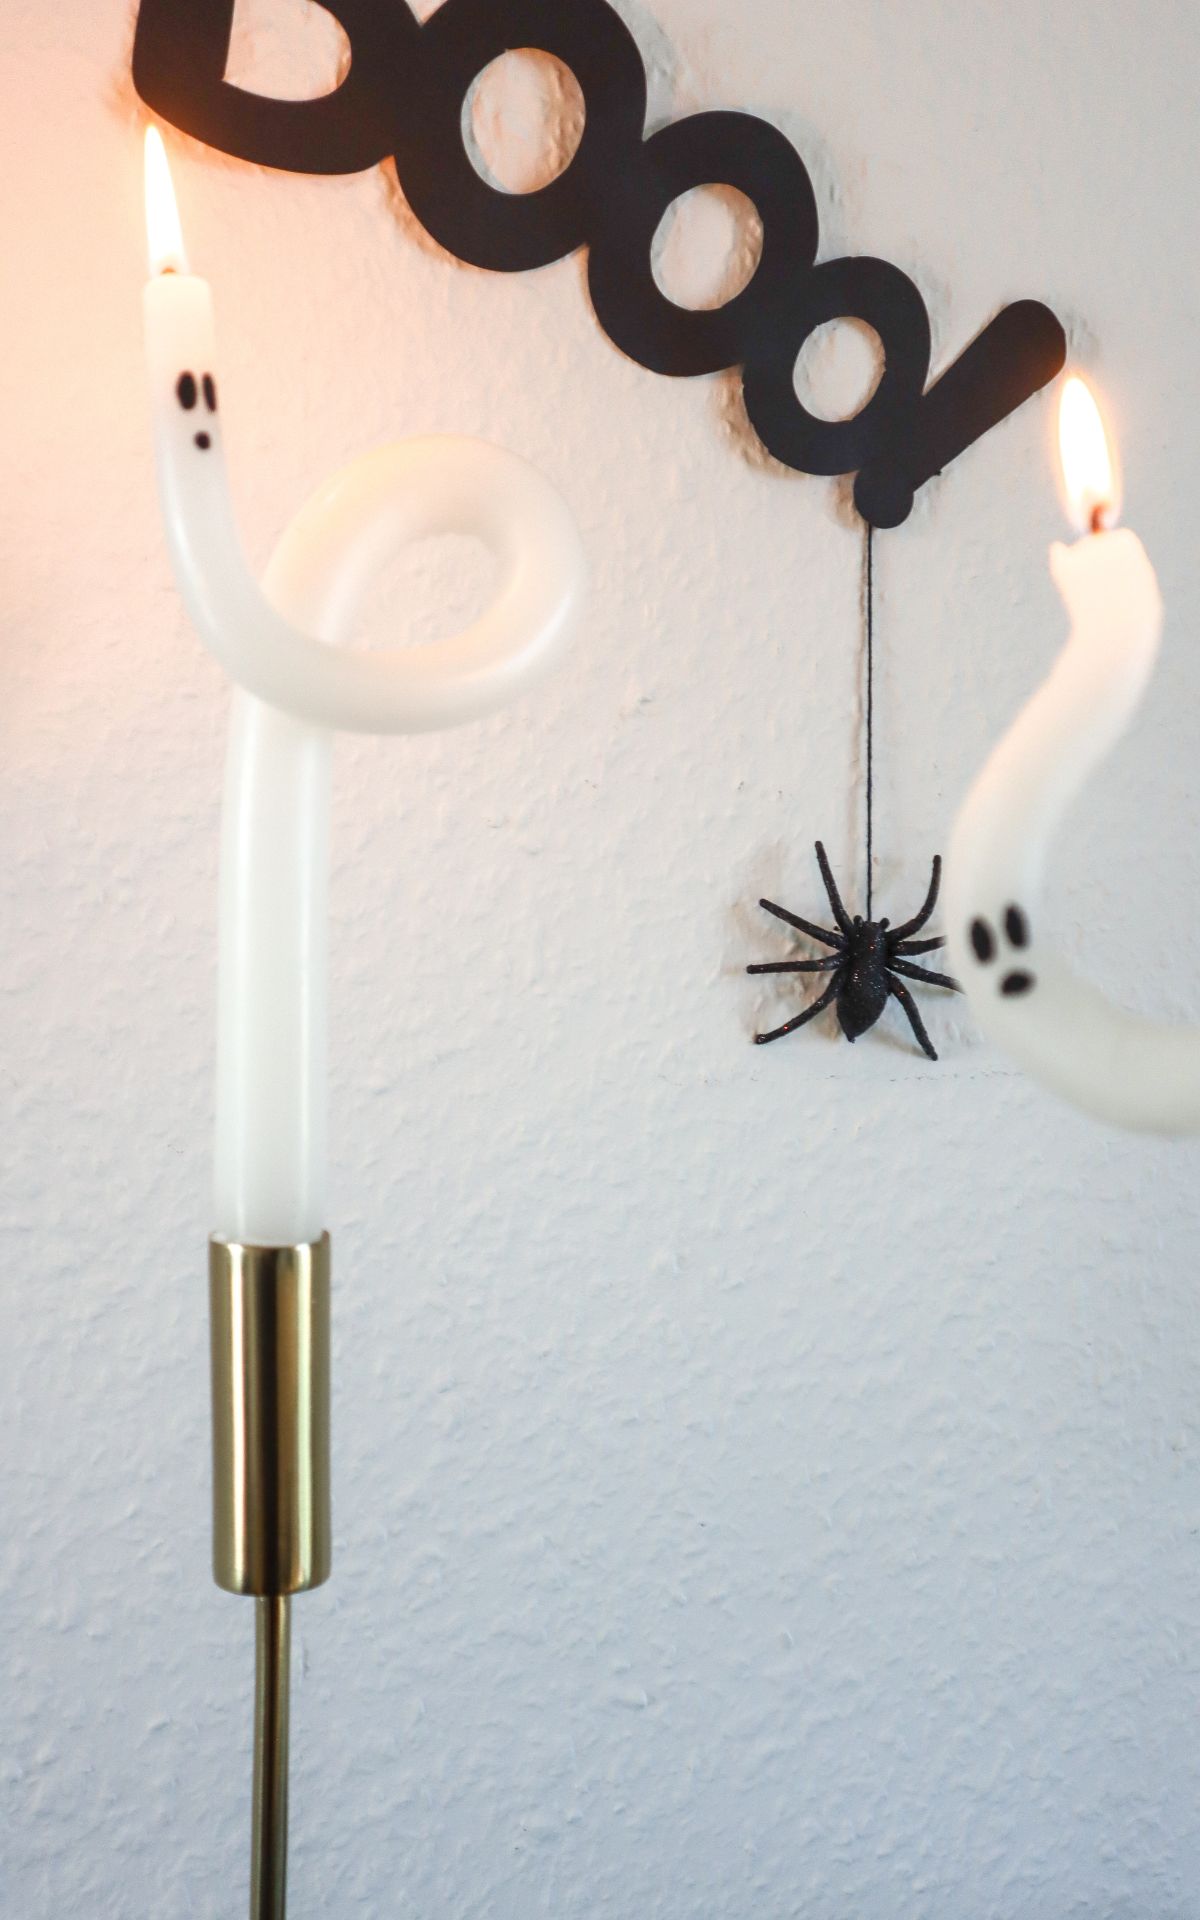 Halloween Kerzen ganz einfach selber machen: Diese süßen Geister aus gedrehten Kerzen machen deine Halloween Deko zum Hingucker! 👻 Hier geht's zur Anleitung >>